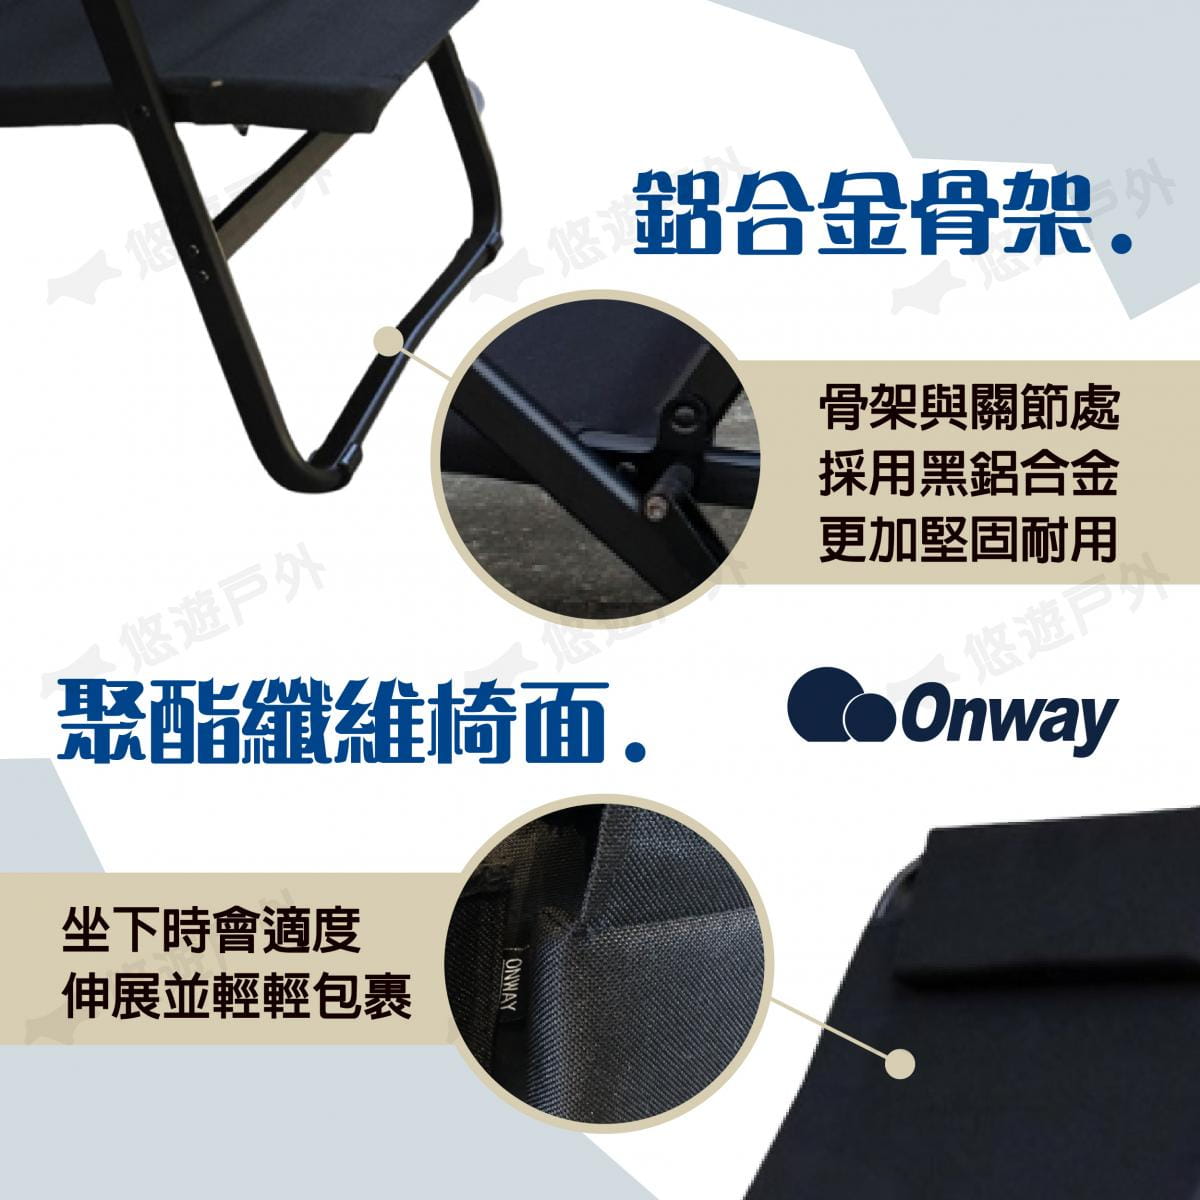 【ONWAY】迷地舒適低黑椅 OW-61-BLK (悠遊戶外) 2